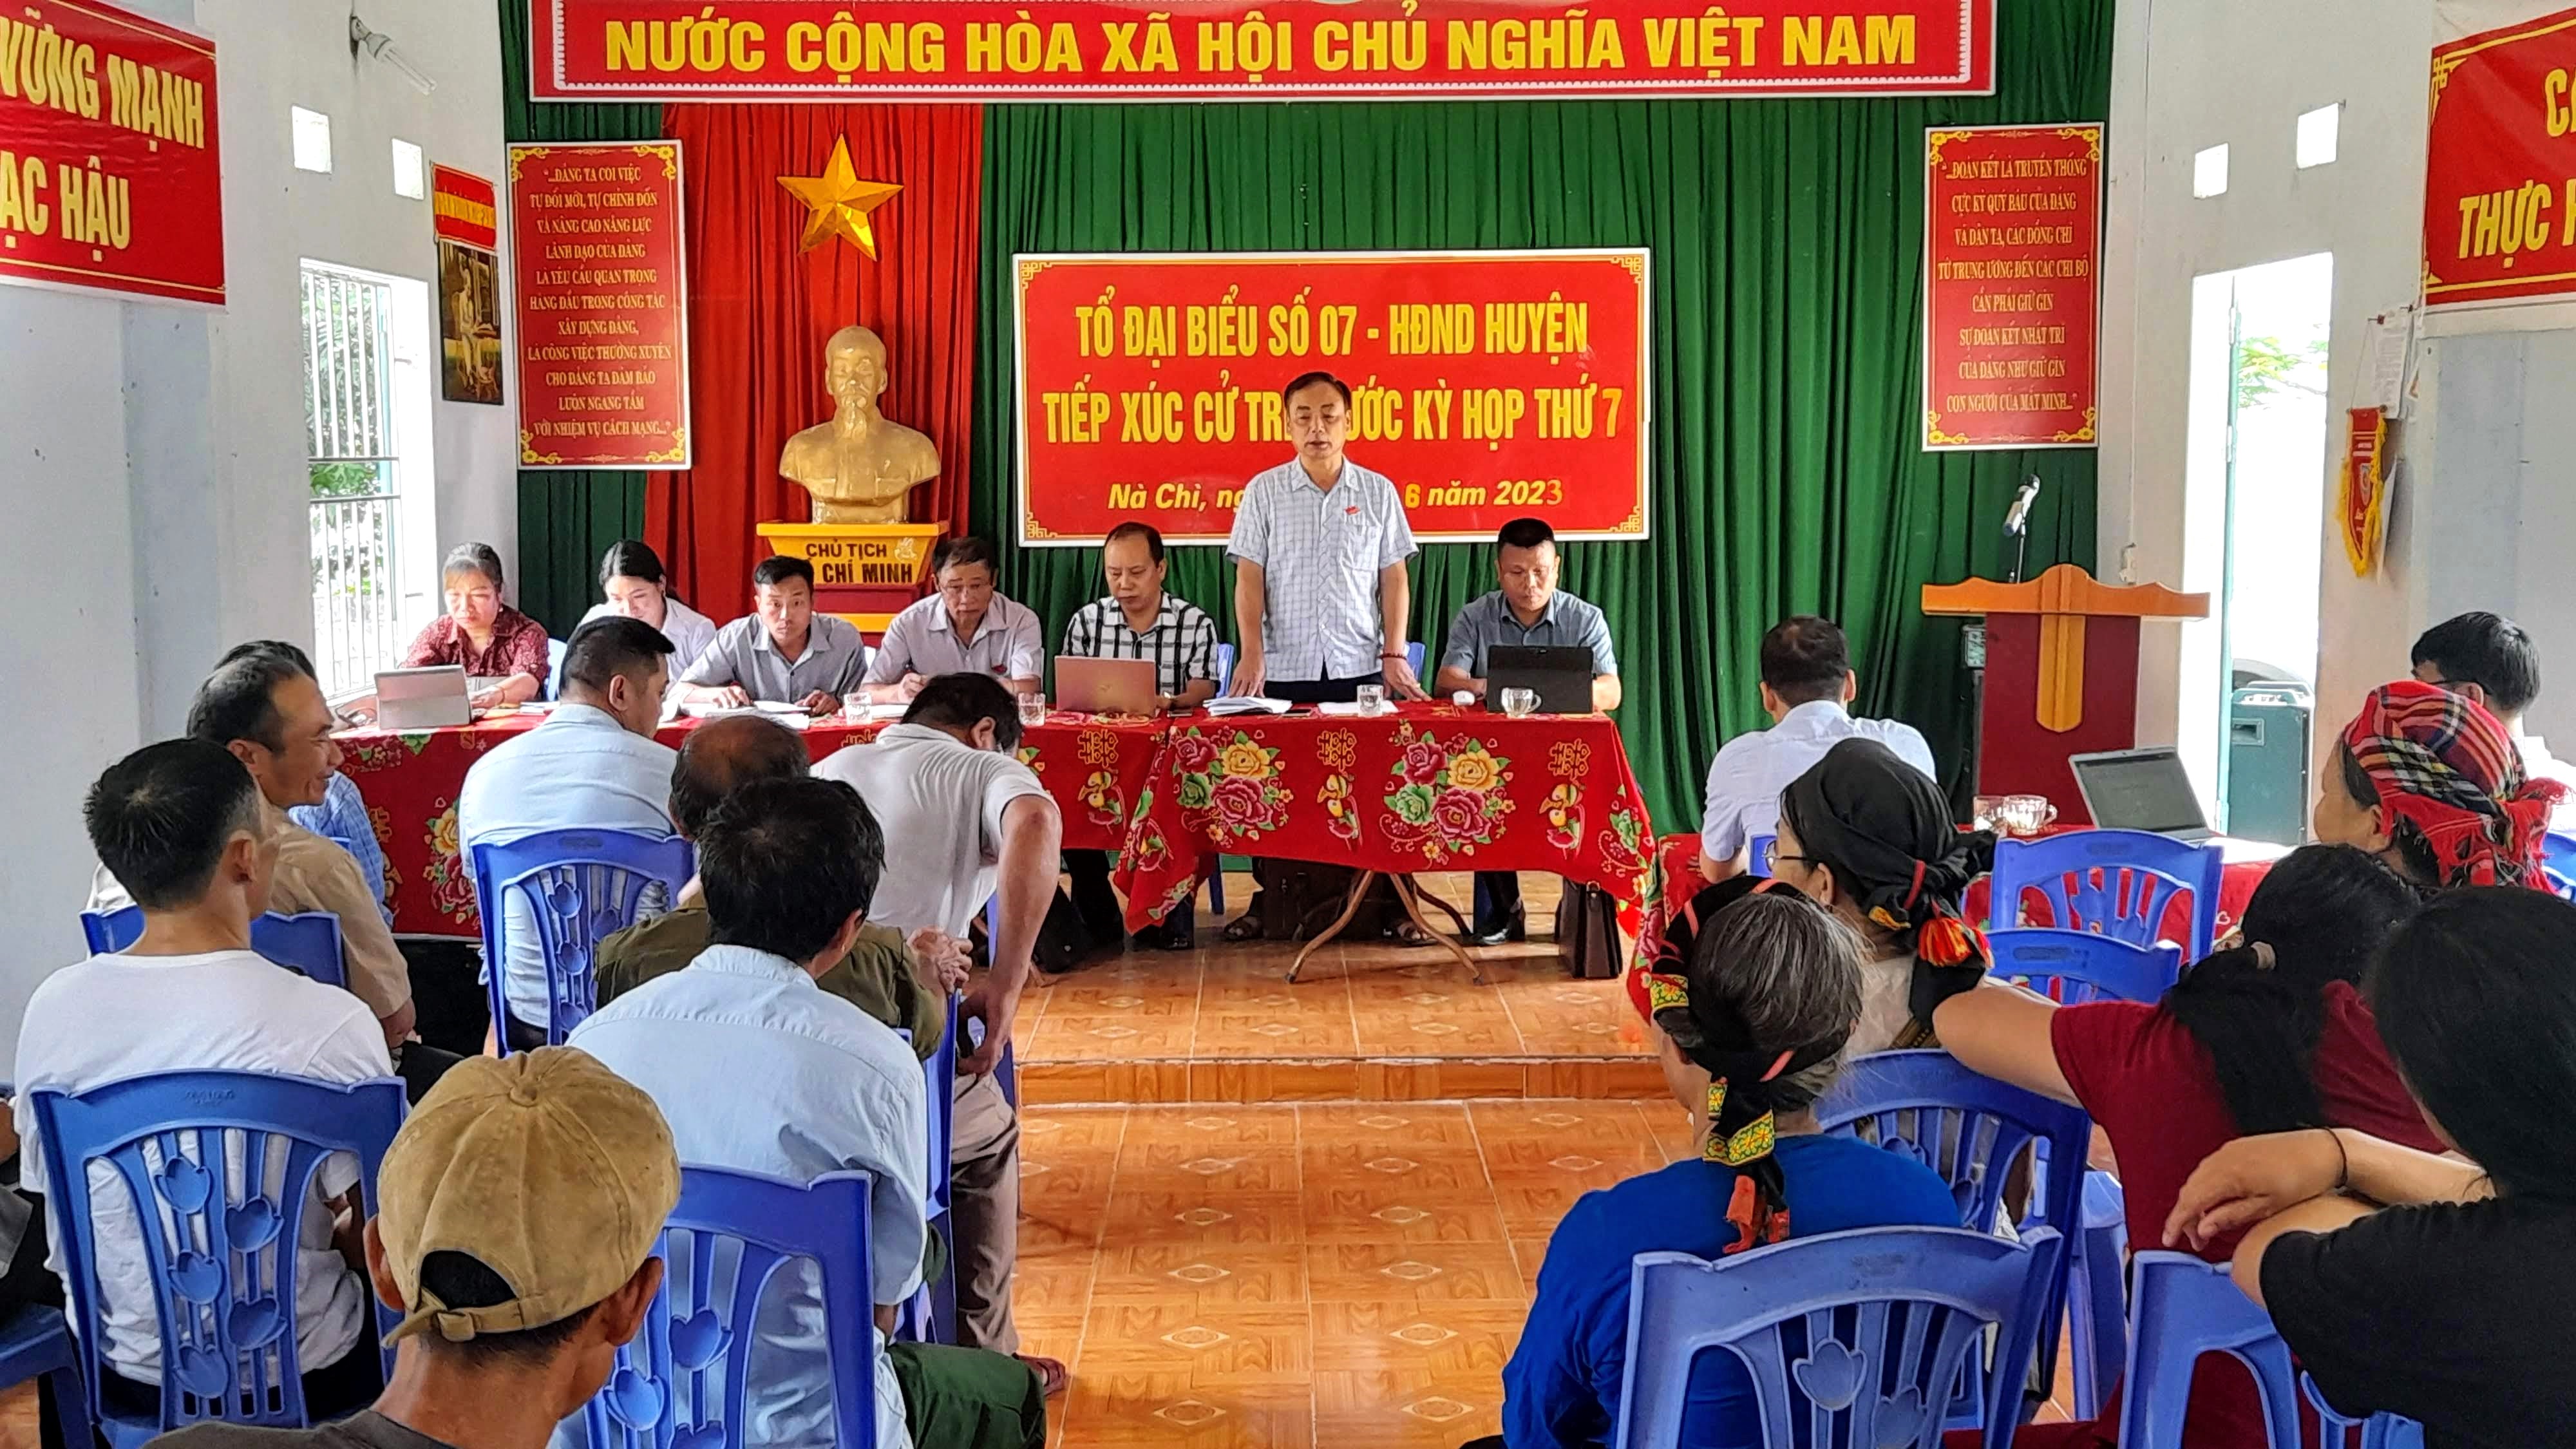 Tổ Đại biểu số 7 - Hội đồng nhân dân huyện tiếp xúc cử tri tại xã Nà Chì